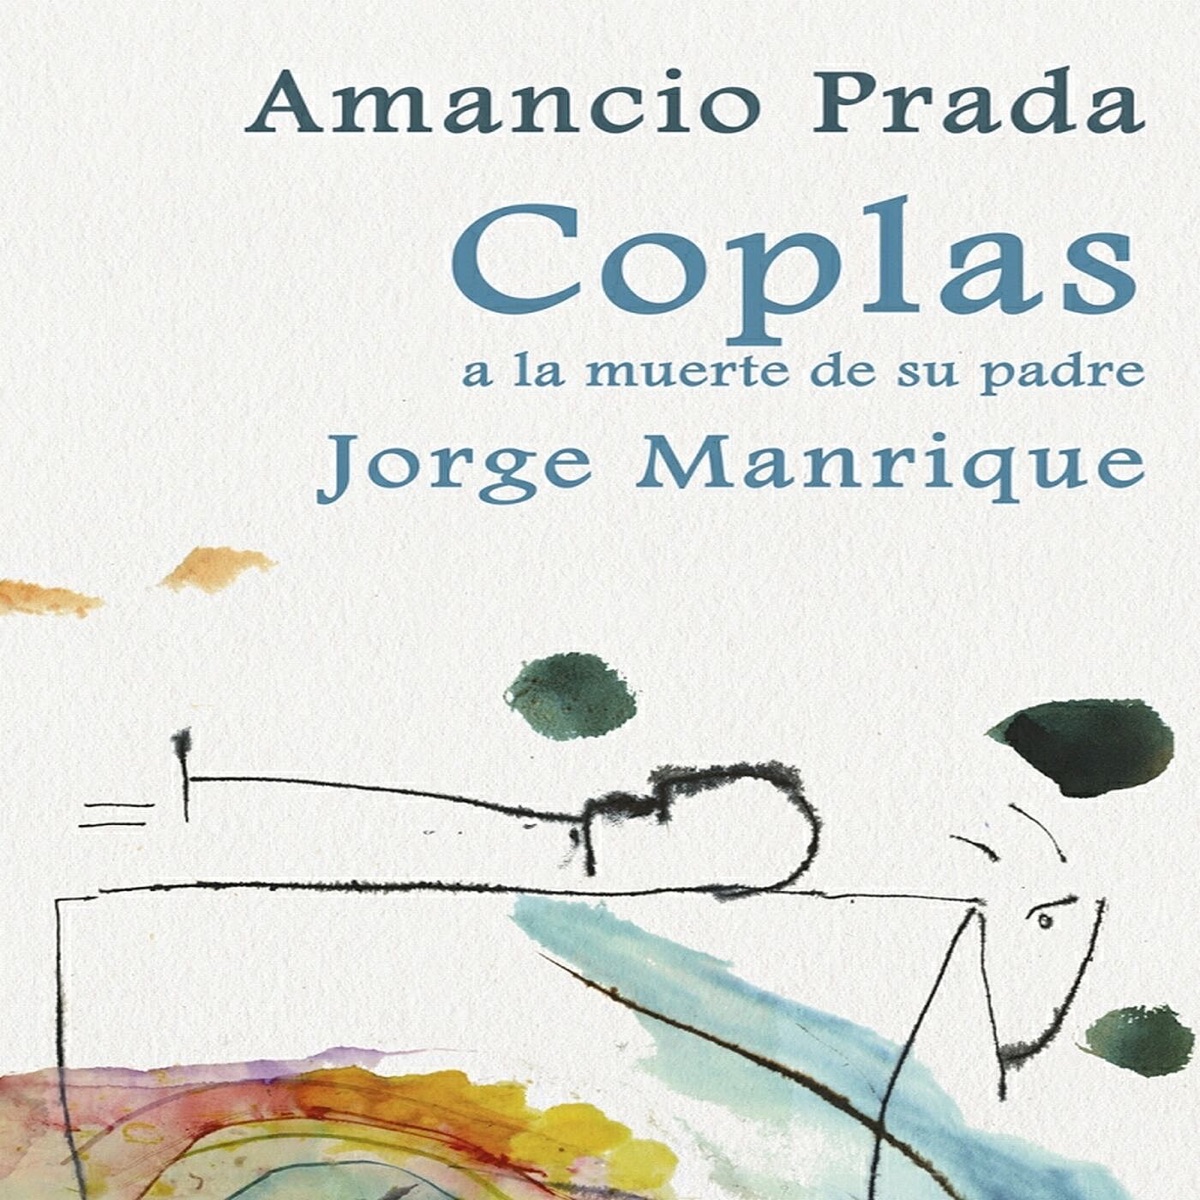 Canciones del Alma by Amancio Prada on Apple Music